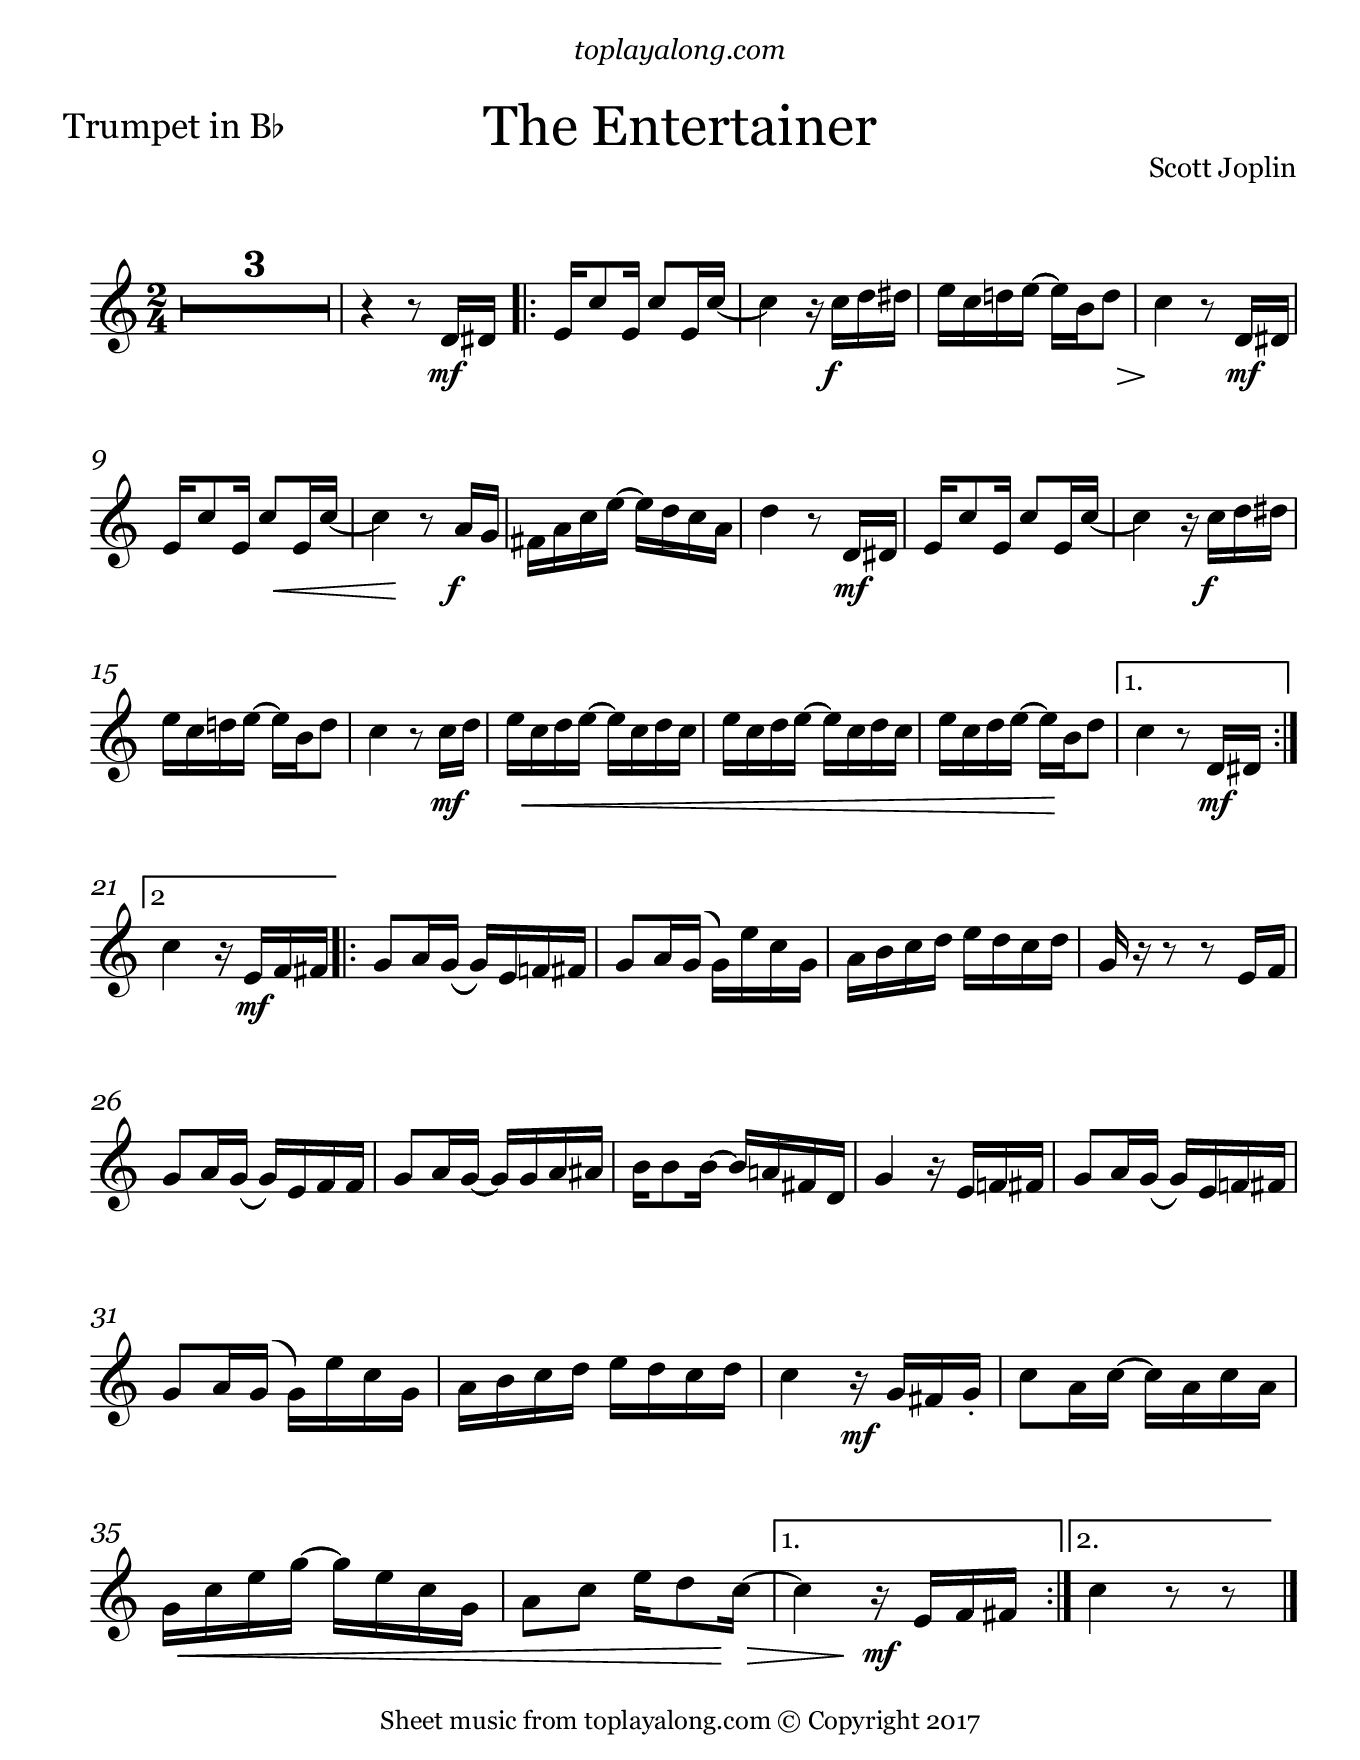 The Entertainerscott Joplin. Sheet Music For Trumpet, Page 1 - Free Printable Sheet Music For Trumpet